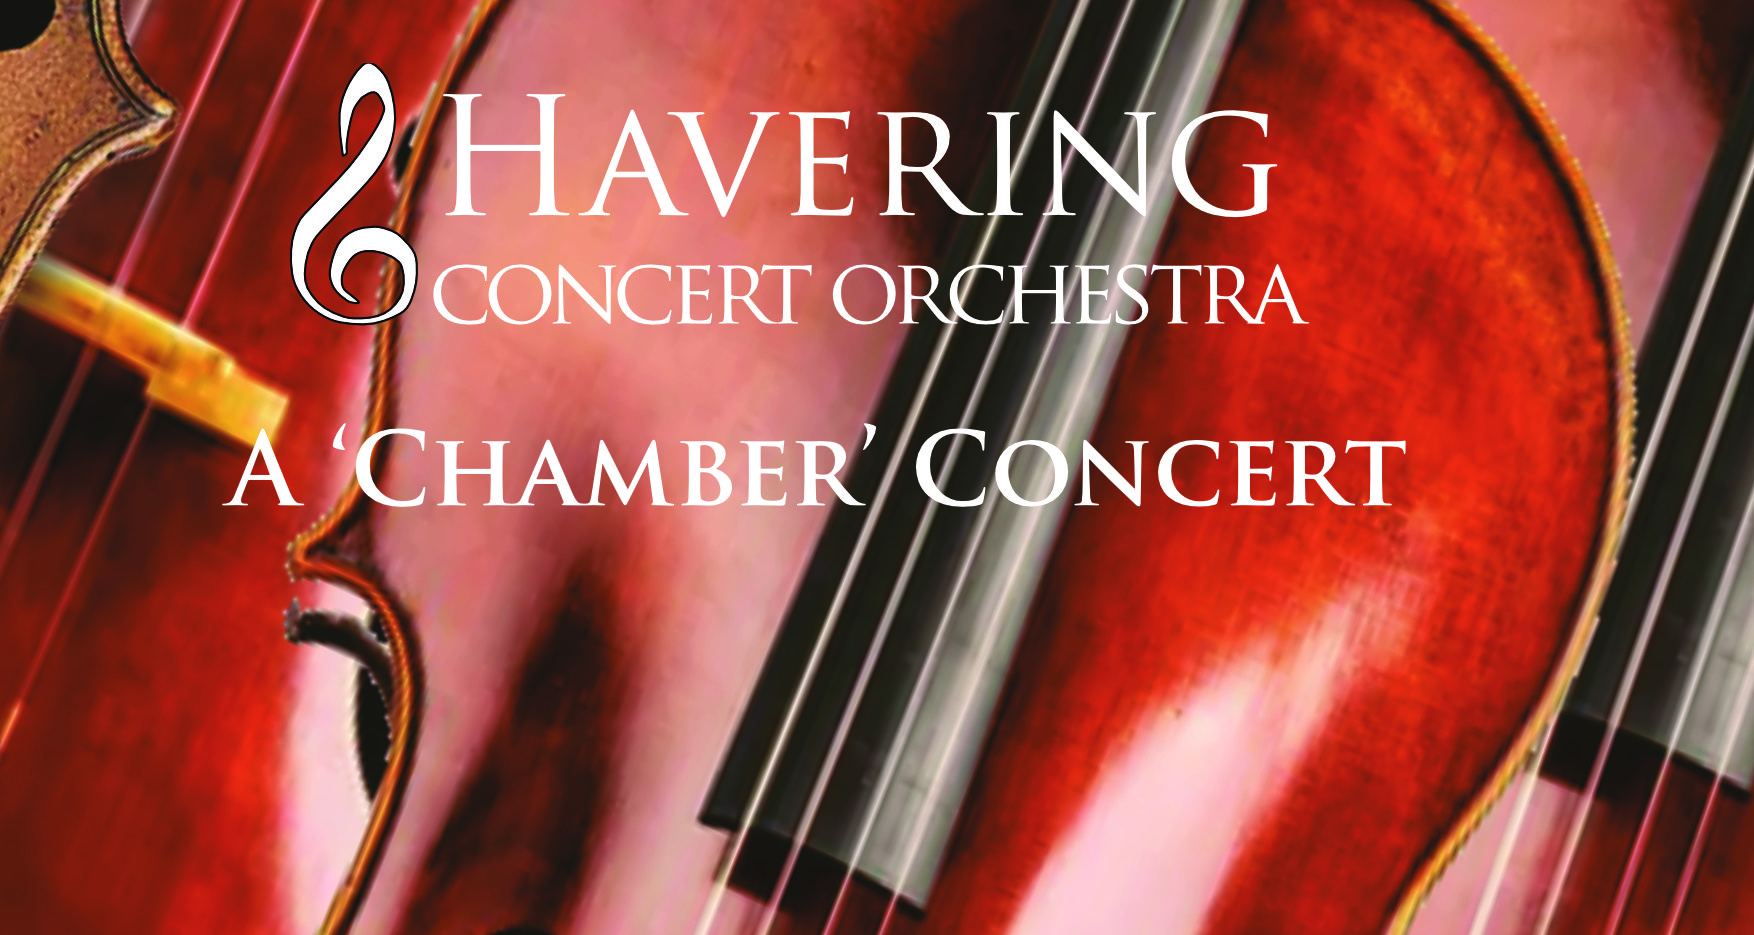 A Chamber Concert